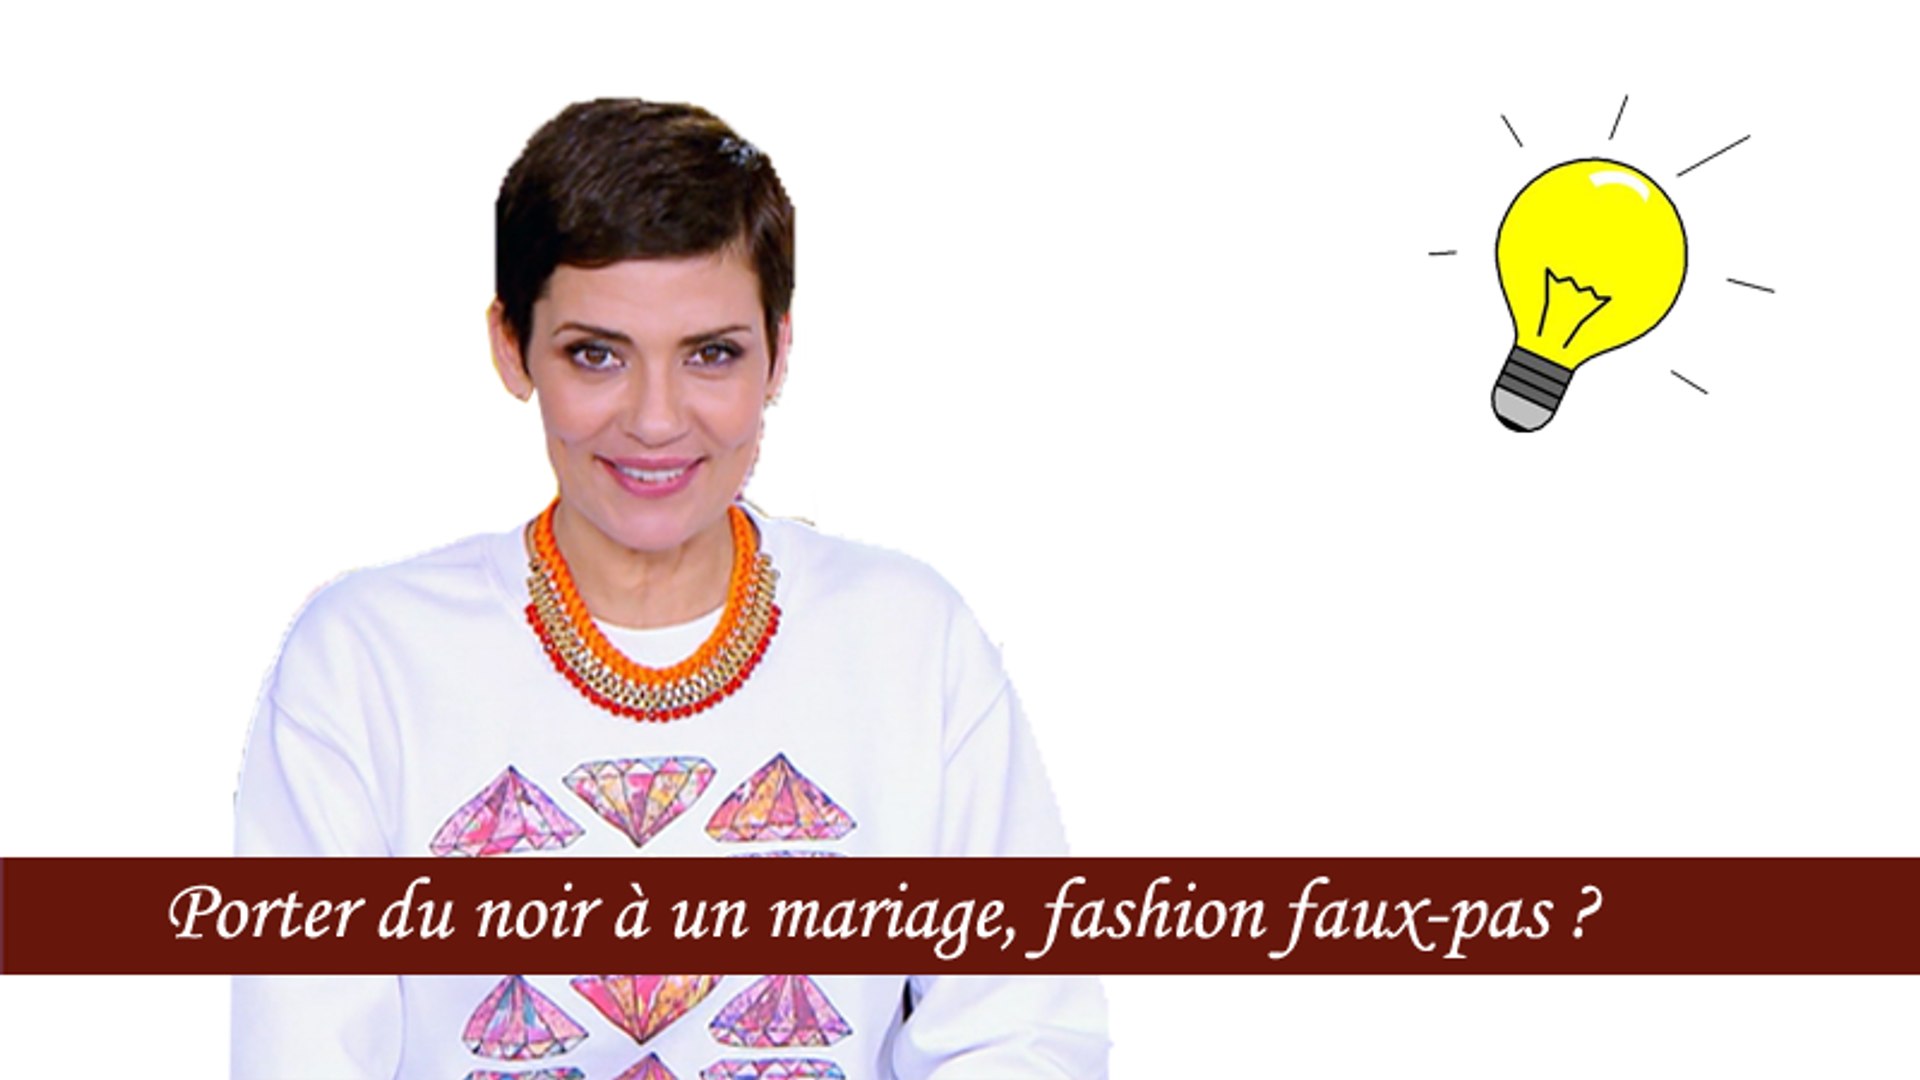 Le conseil de Cristina Cordula : porter du noir à un mariage, fashion  faux-pas ? - Vidéo Dailymotion